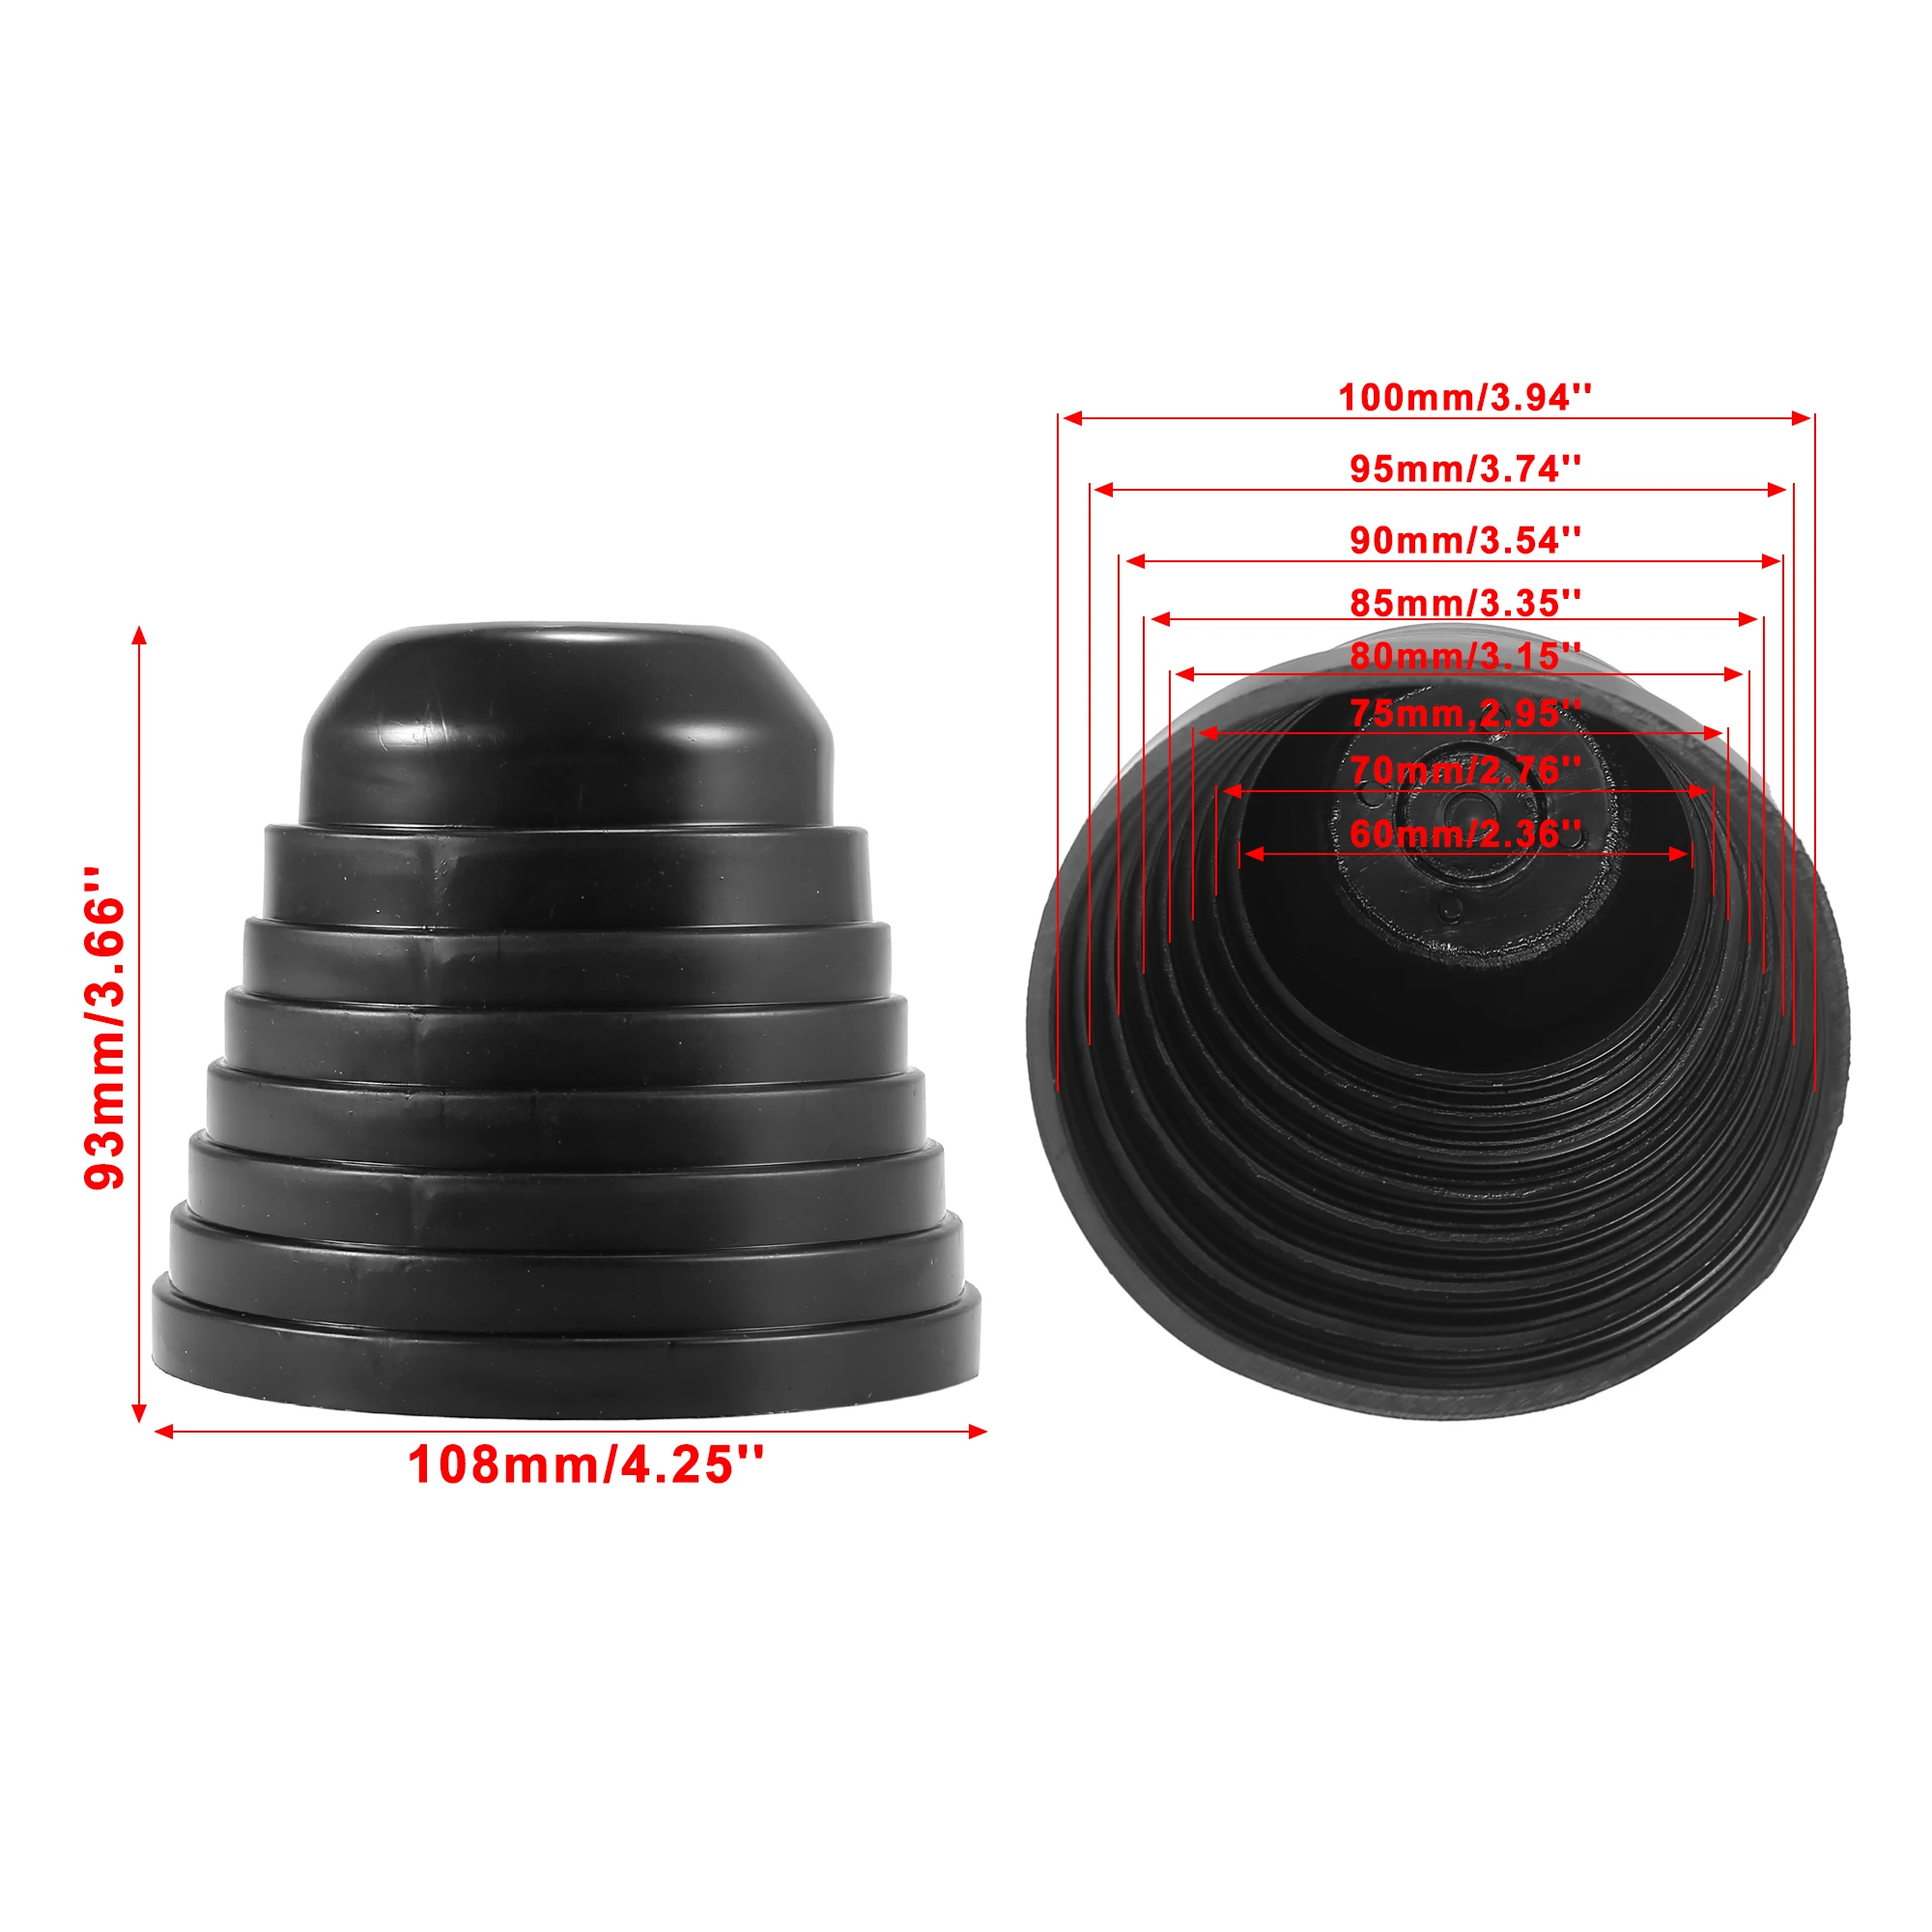 X AUTOHAUX 2pcs 60mm Car Rubber Housing Seal Caps Headlight Dust Cover Waterproof Dustproof Caps 